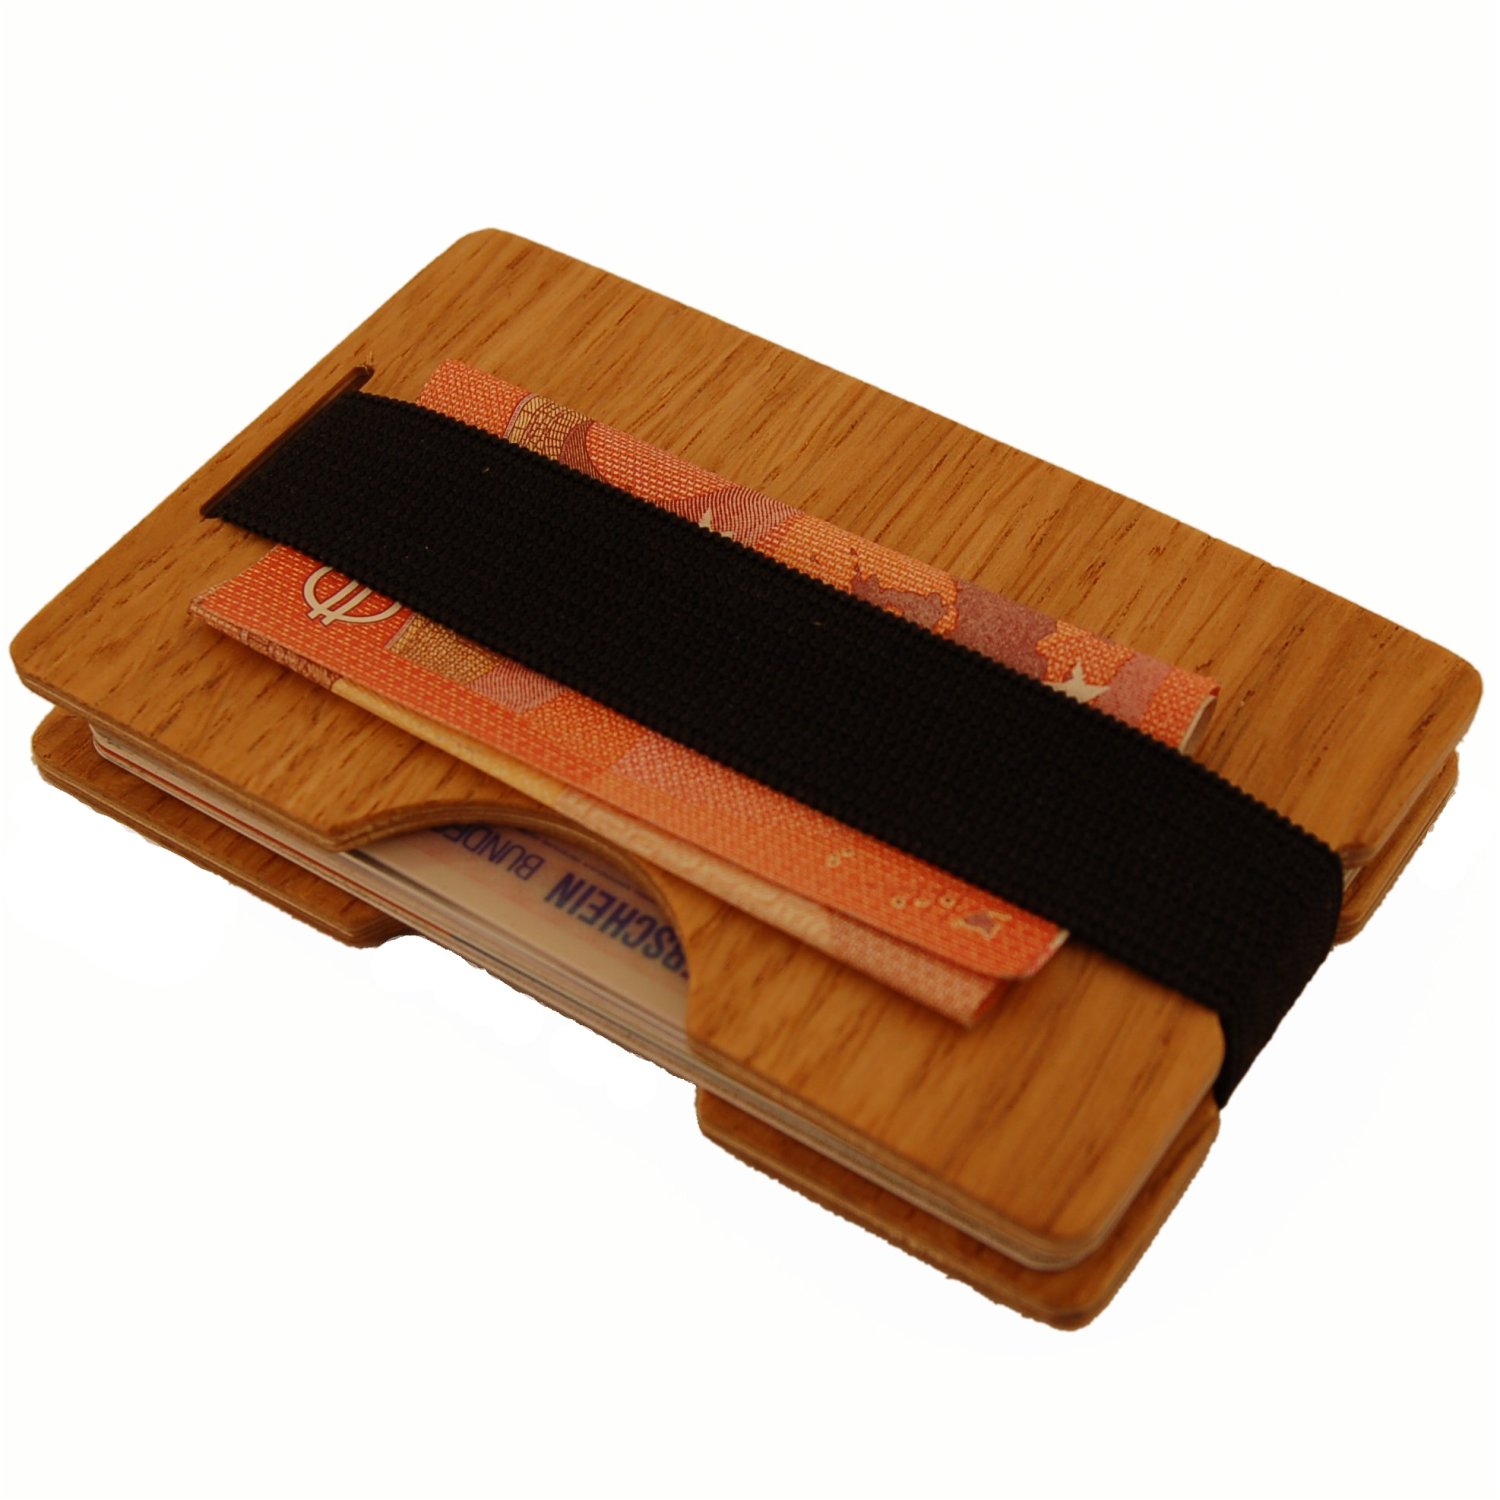 Mini portafoglio in legno fatto con legno naturale sostenibile